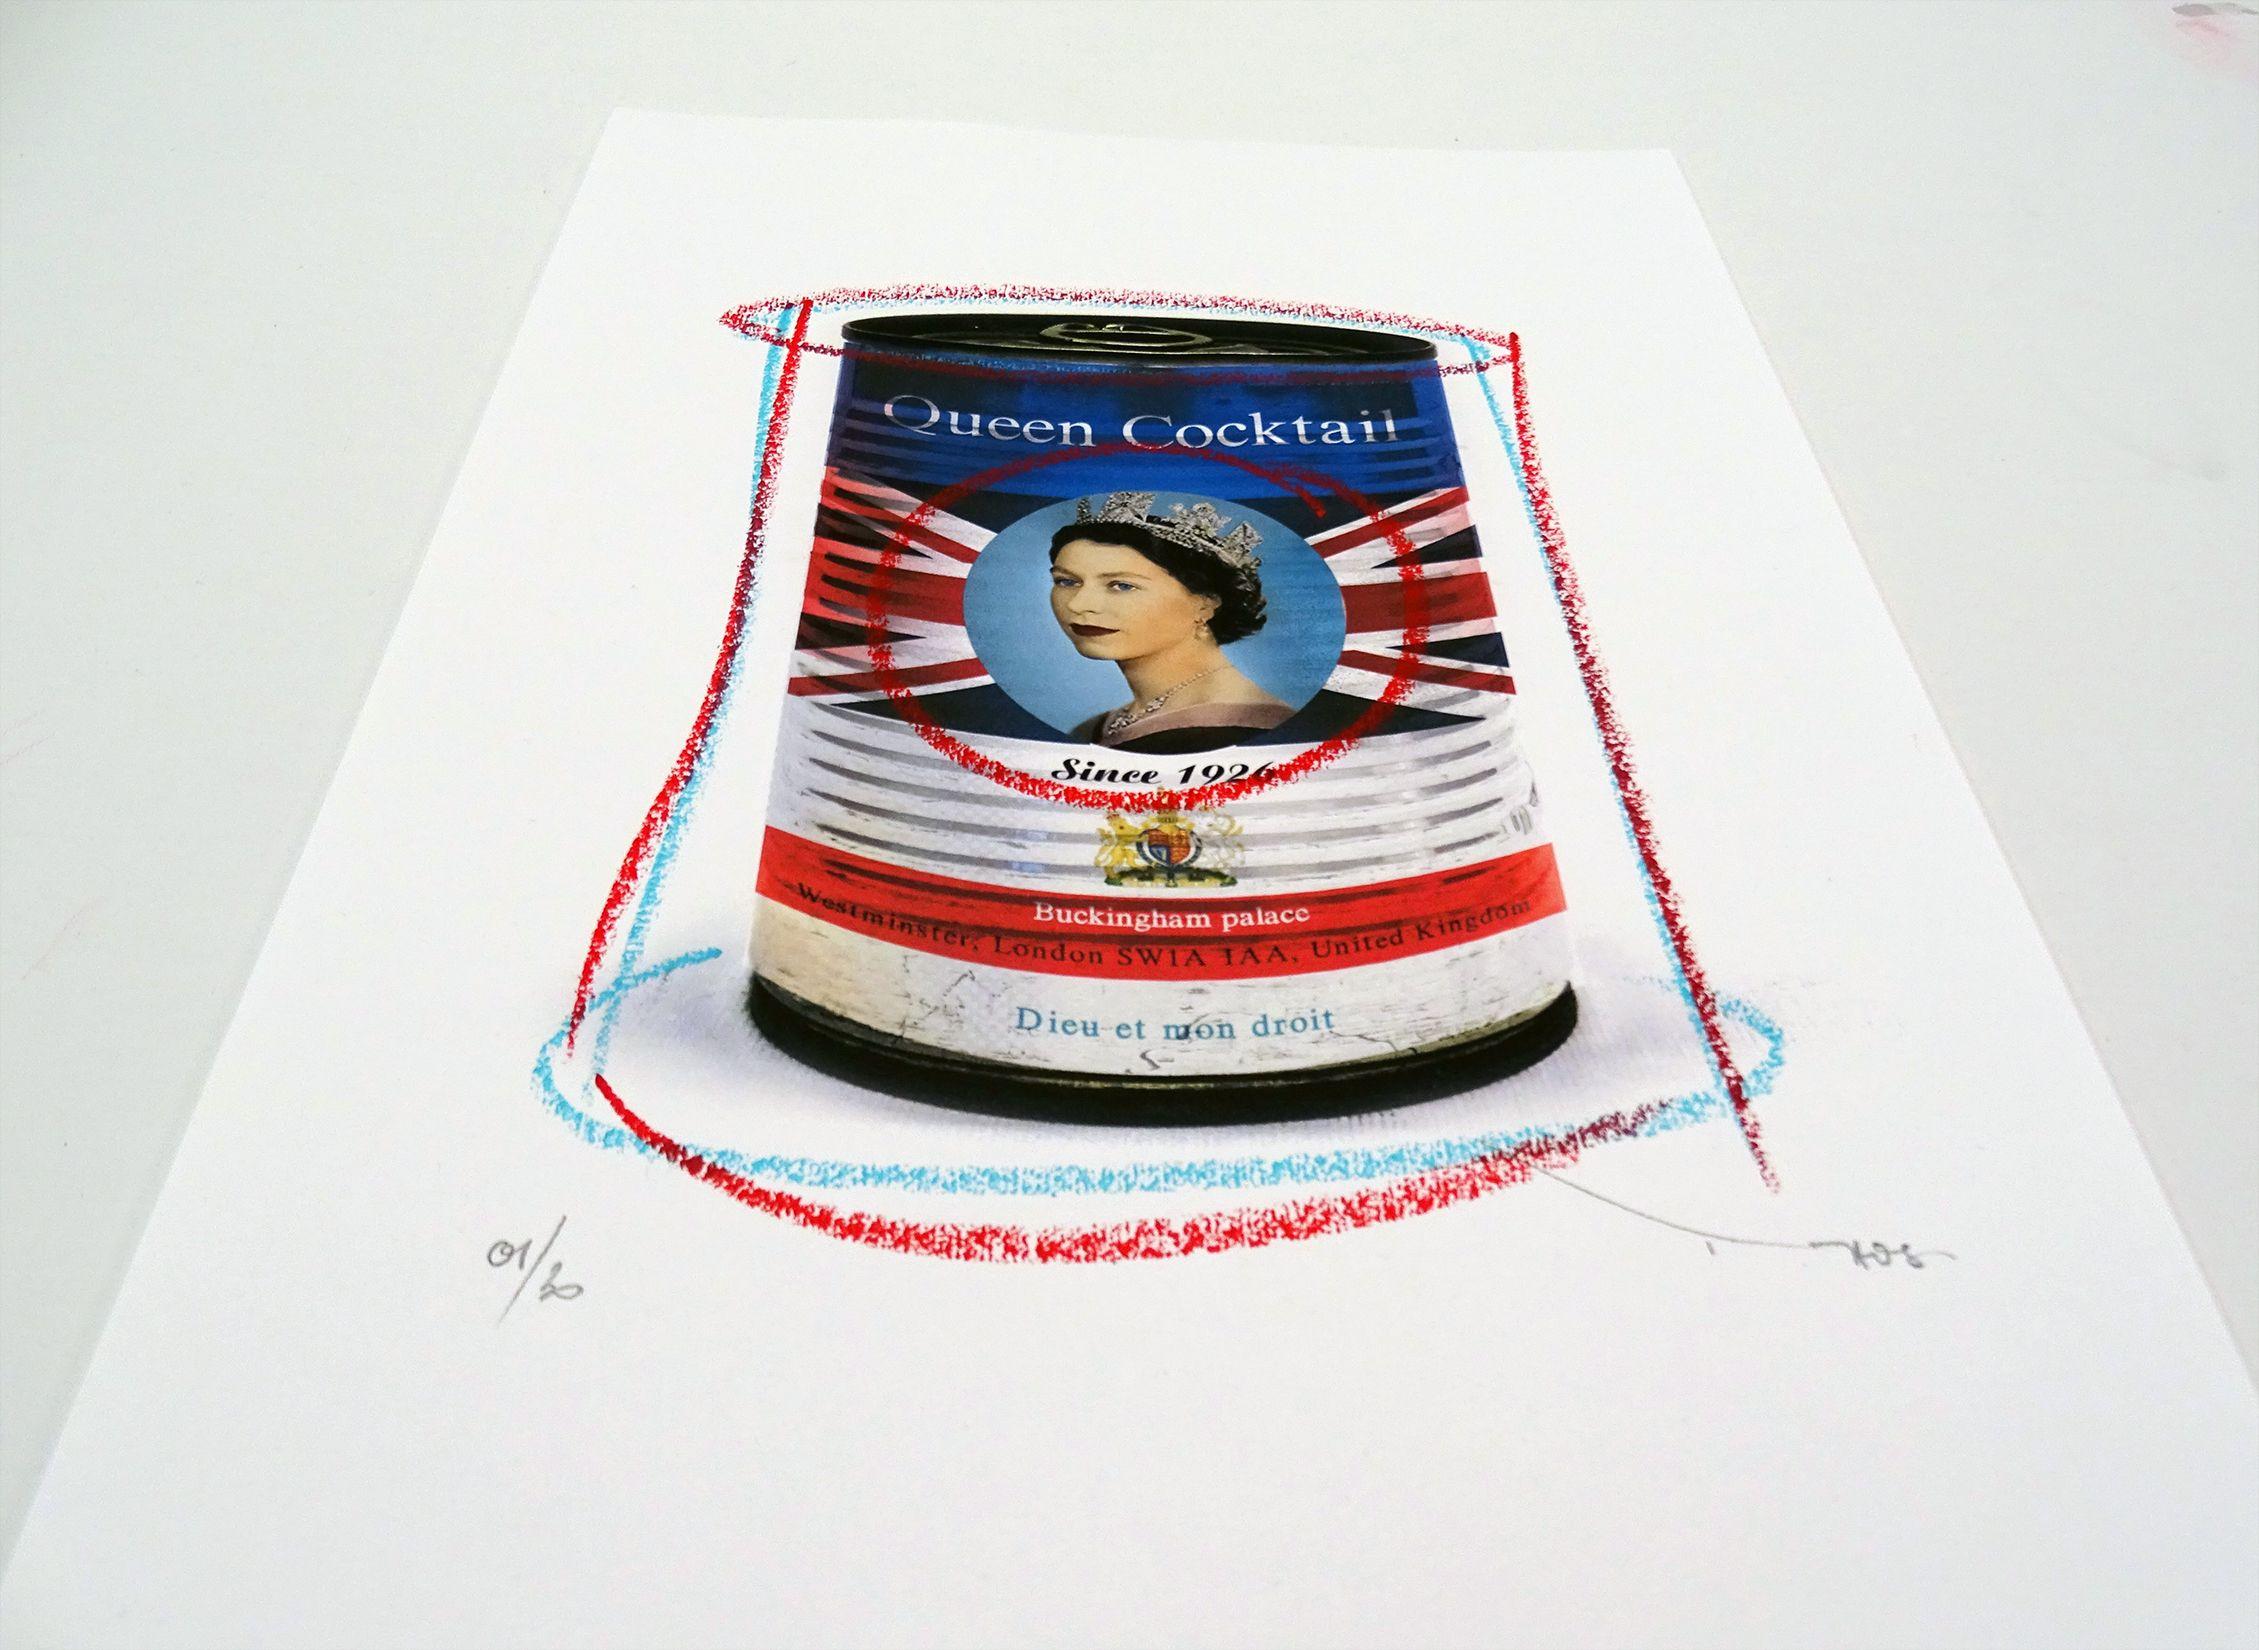 Tehos – Königin-Cocktail, Mischtechnik auf Papier (Pop-Art), Mixed Media Art, von Tehos Frederic Camilleri